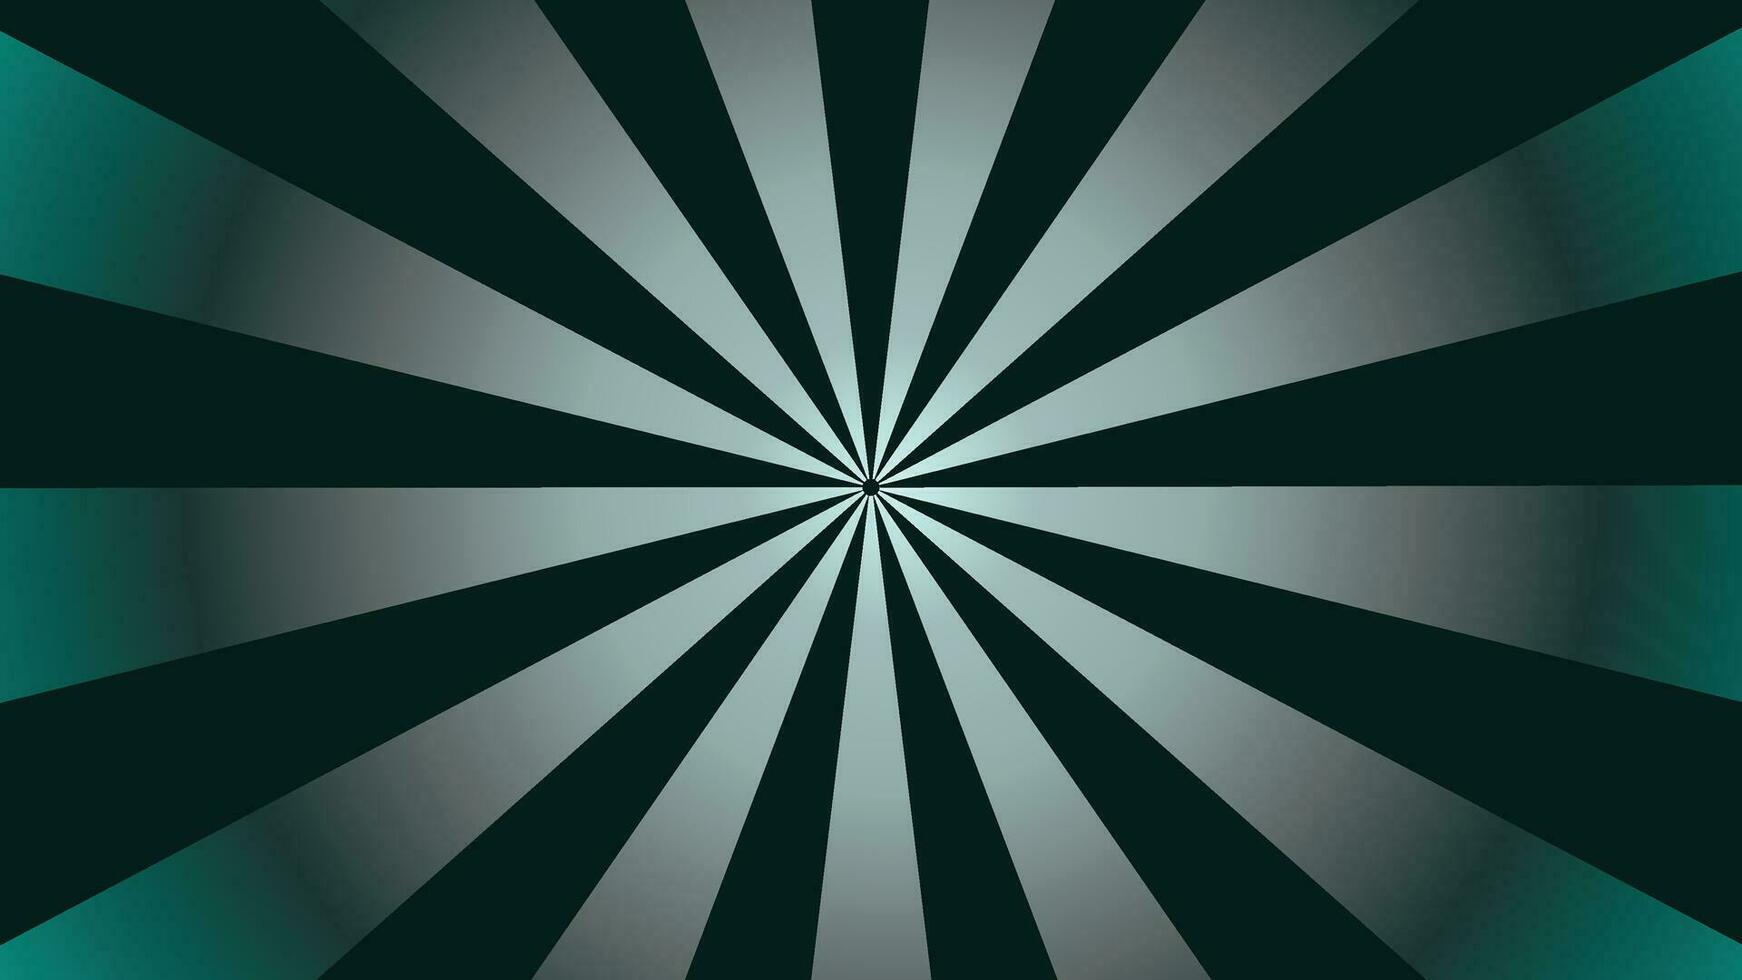 Abstarct spiral round spinning vortex style background vector